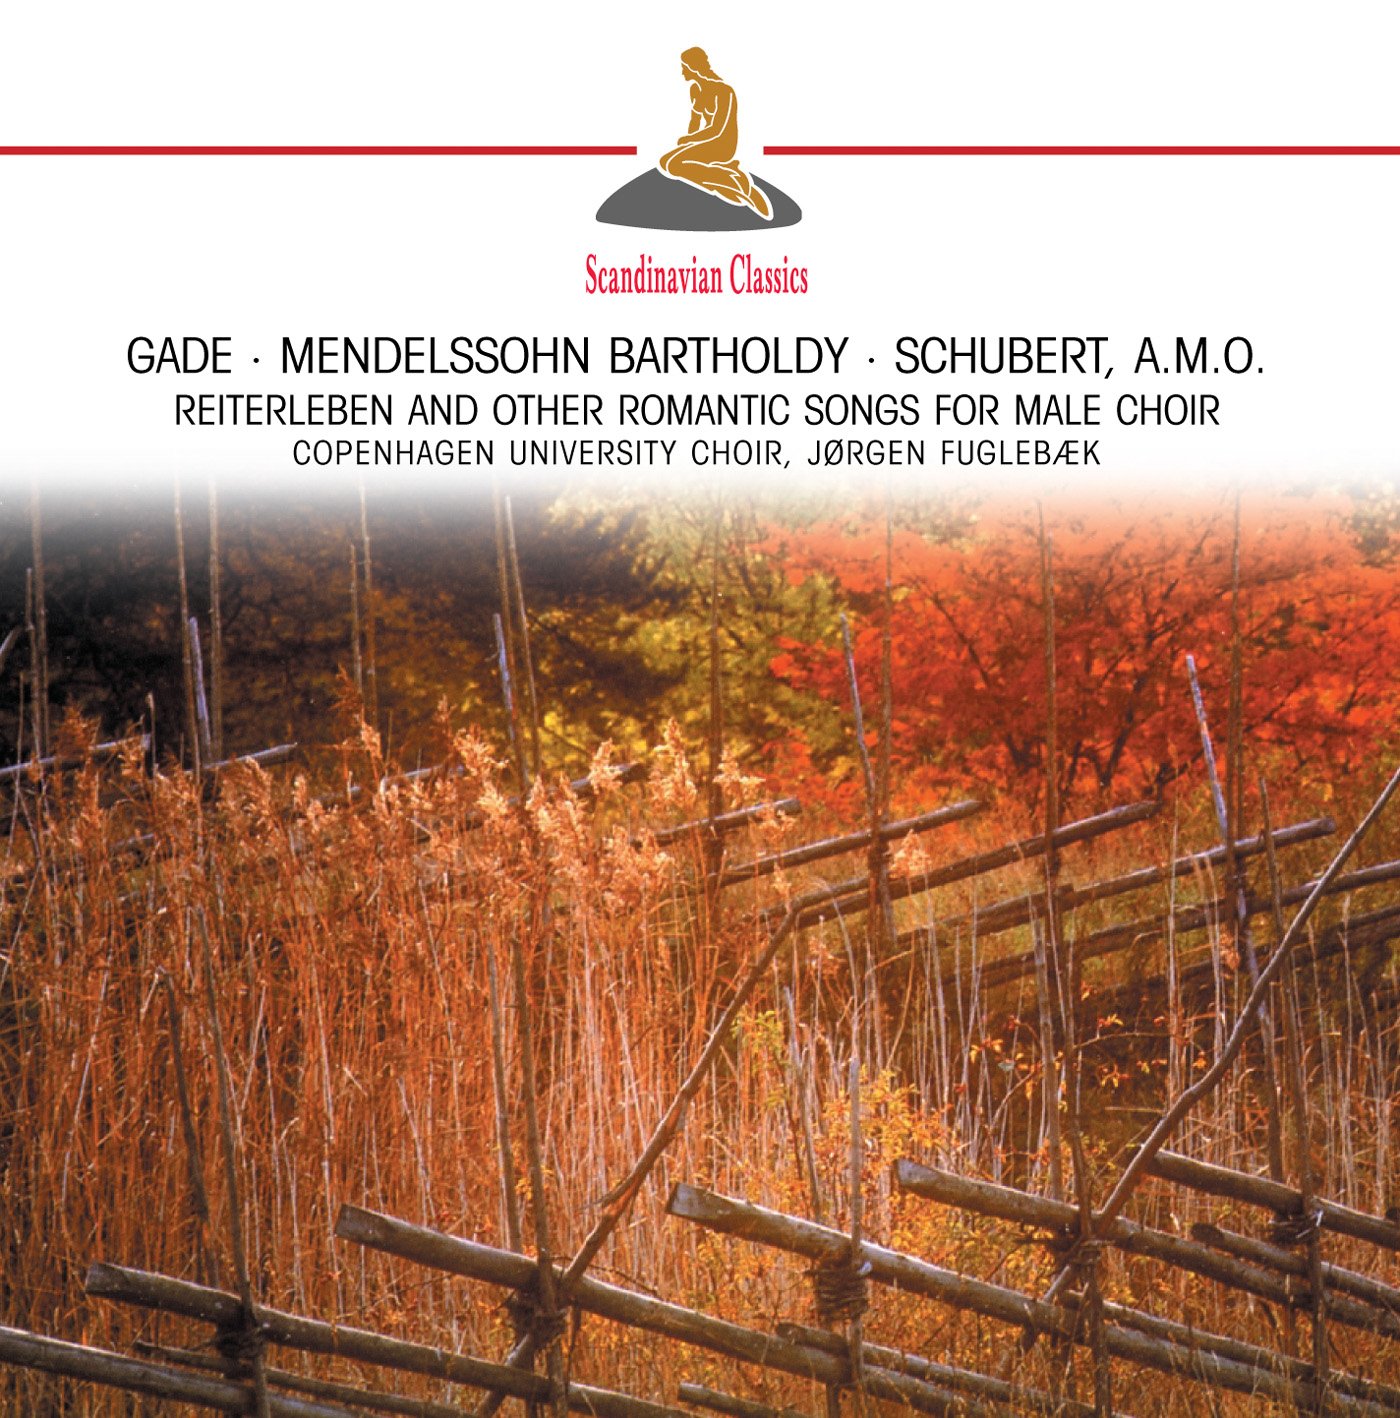 Reiterleben & Other Romantic Songs for Male Choir (Elgar, Mendelssohn, Schubert, Gade, Peterson-Berger) - COPENHAGEN UNIVERSITY CHOIR